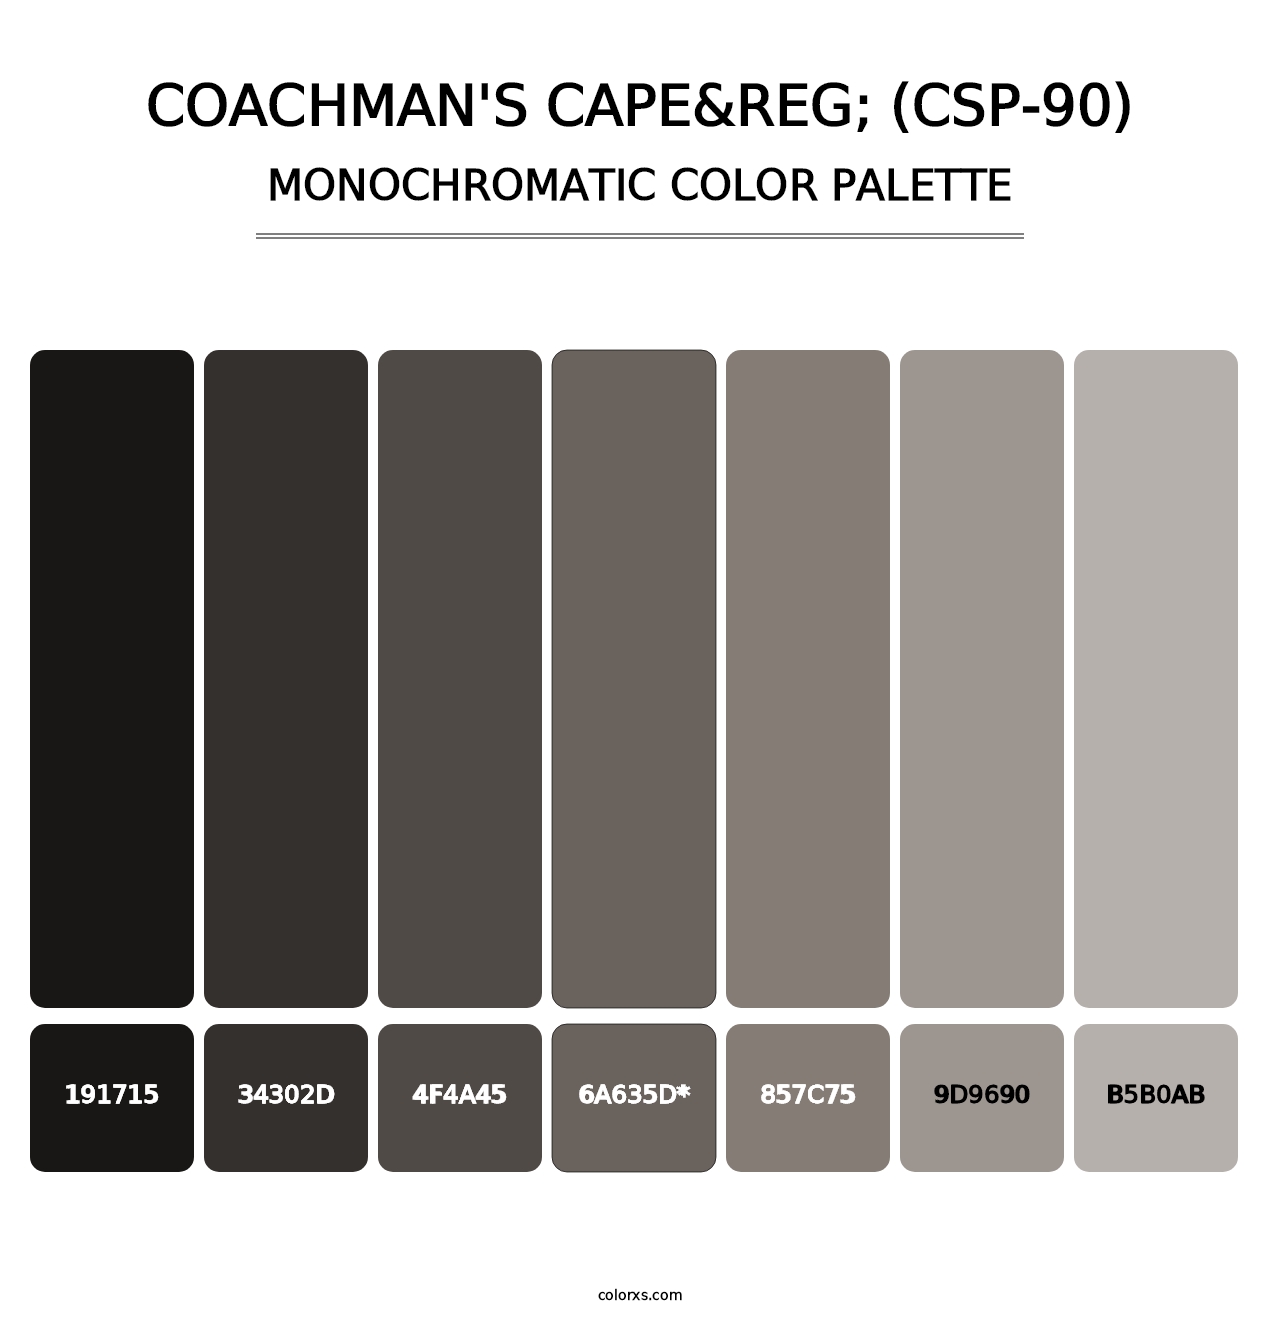 Coachman's Cape&reg; (CSP-90) - Monochromatic Color Palette